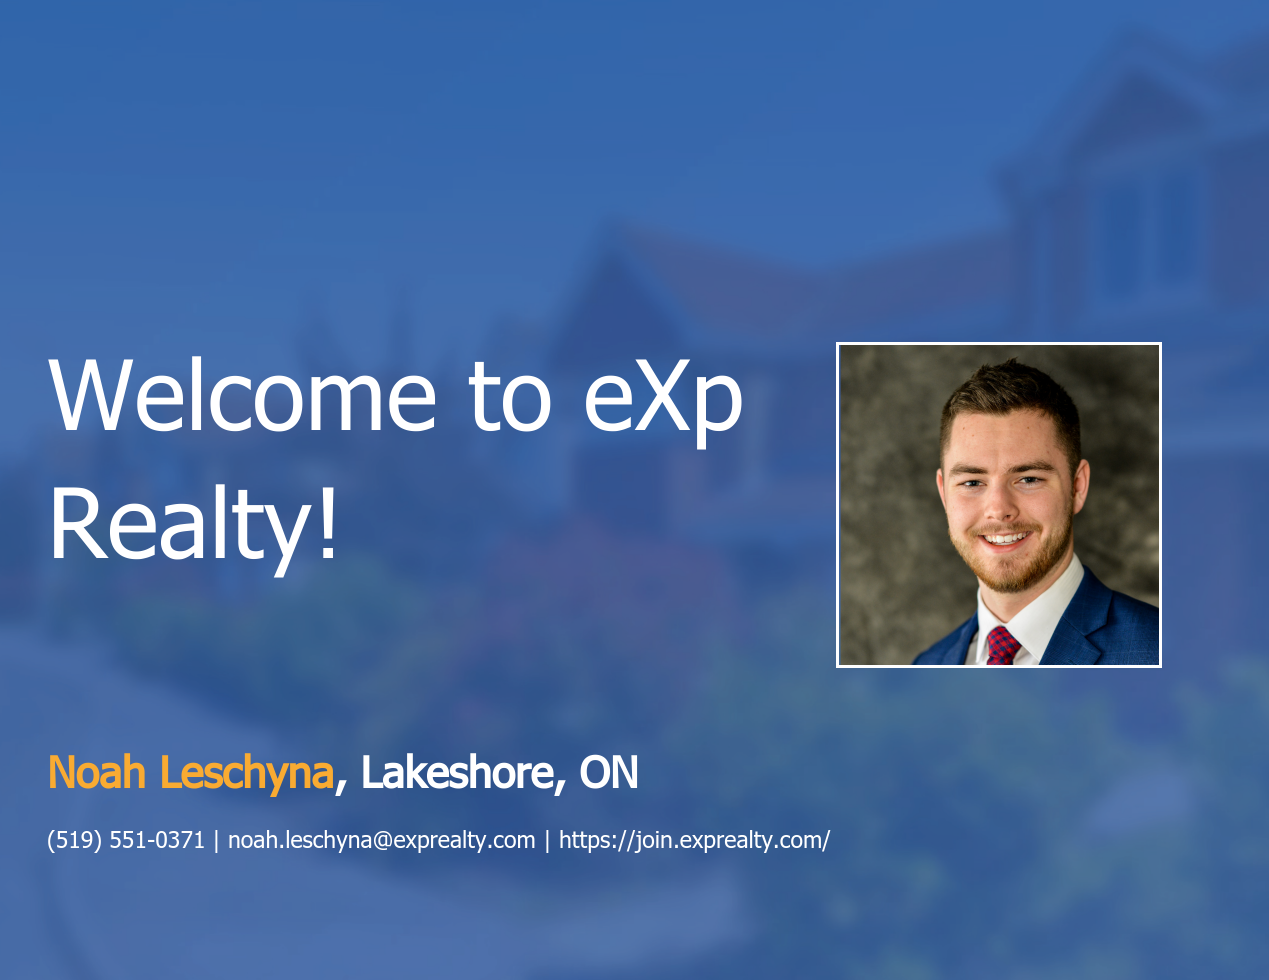 eXp Realty Welcomes Noah Leschyna!